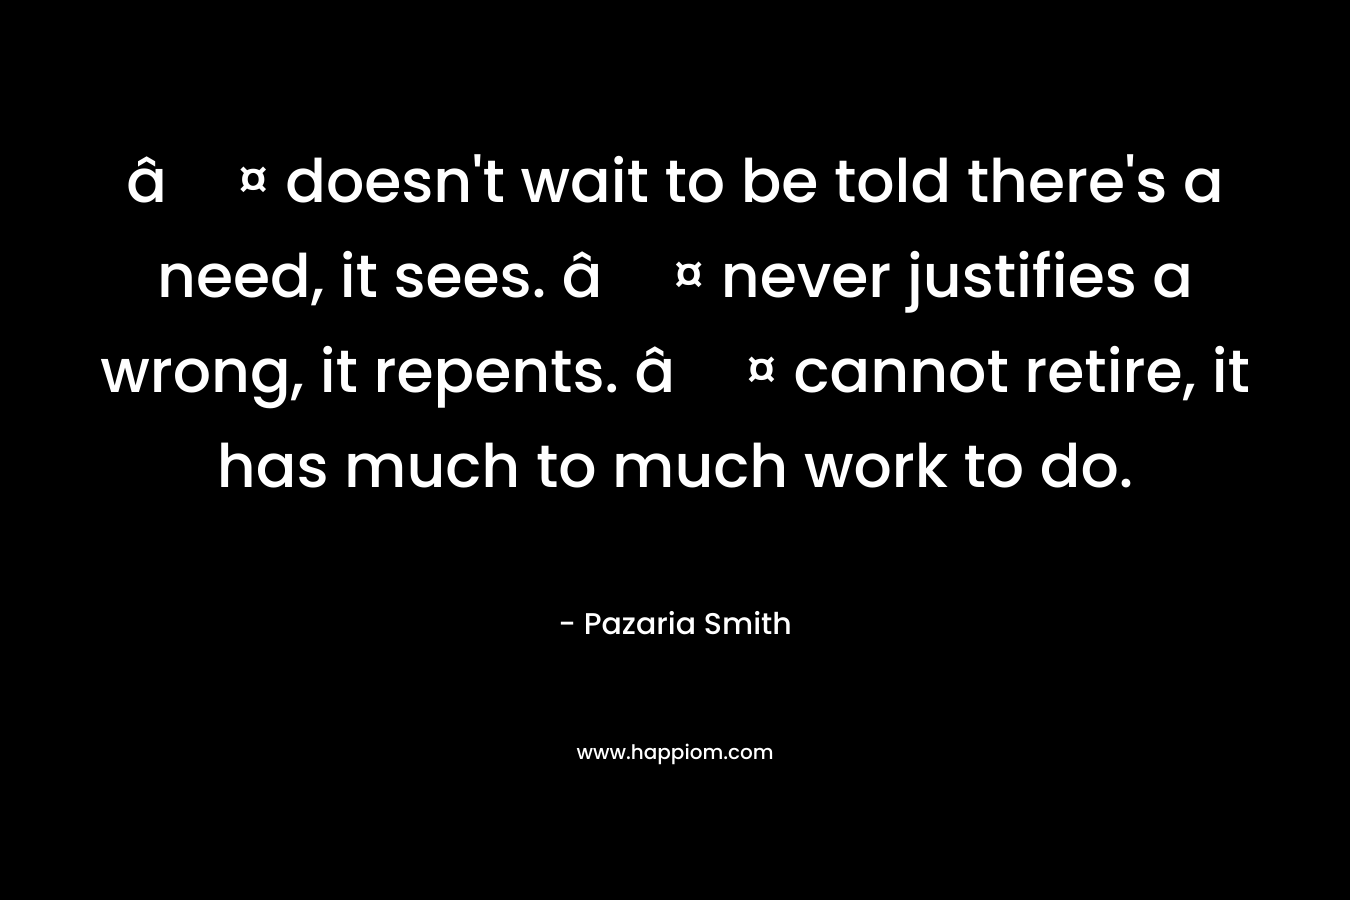 â¤ doesn’t wait to be told there’s a need, it sees. â¤ never justifies a wrong, it repents. â¤ cannot retire, it has much to much work to do. – Pazaria Smith